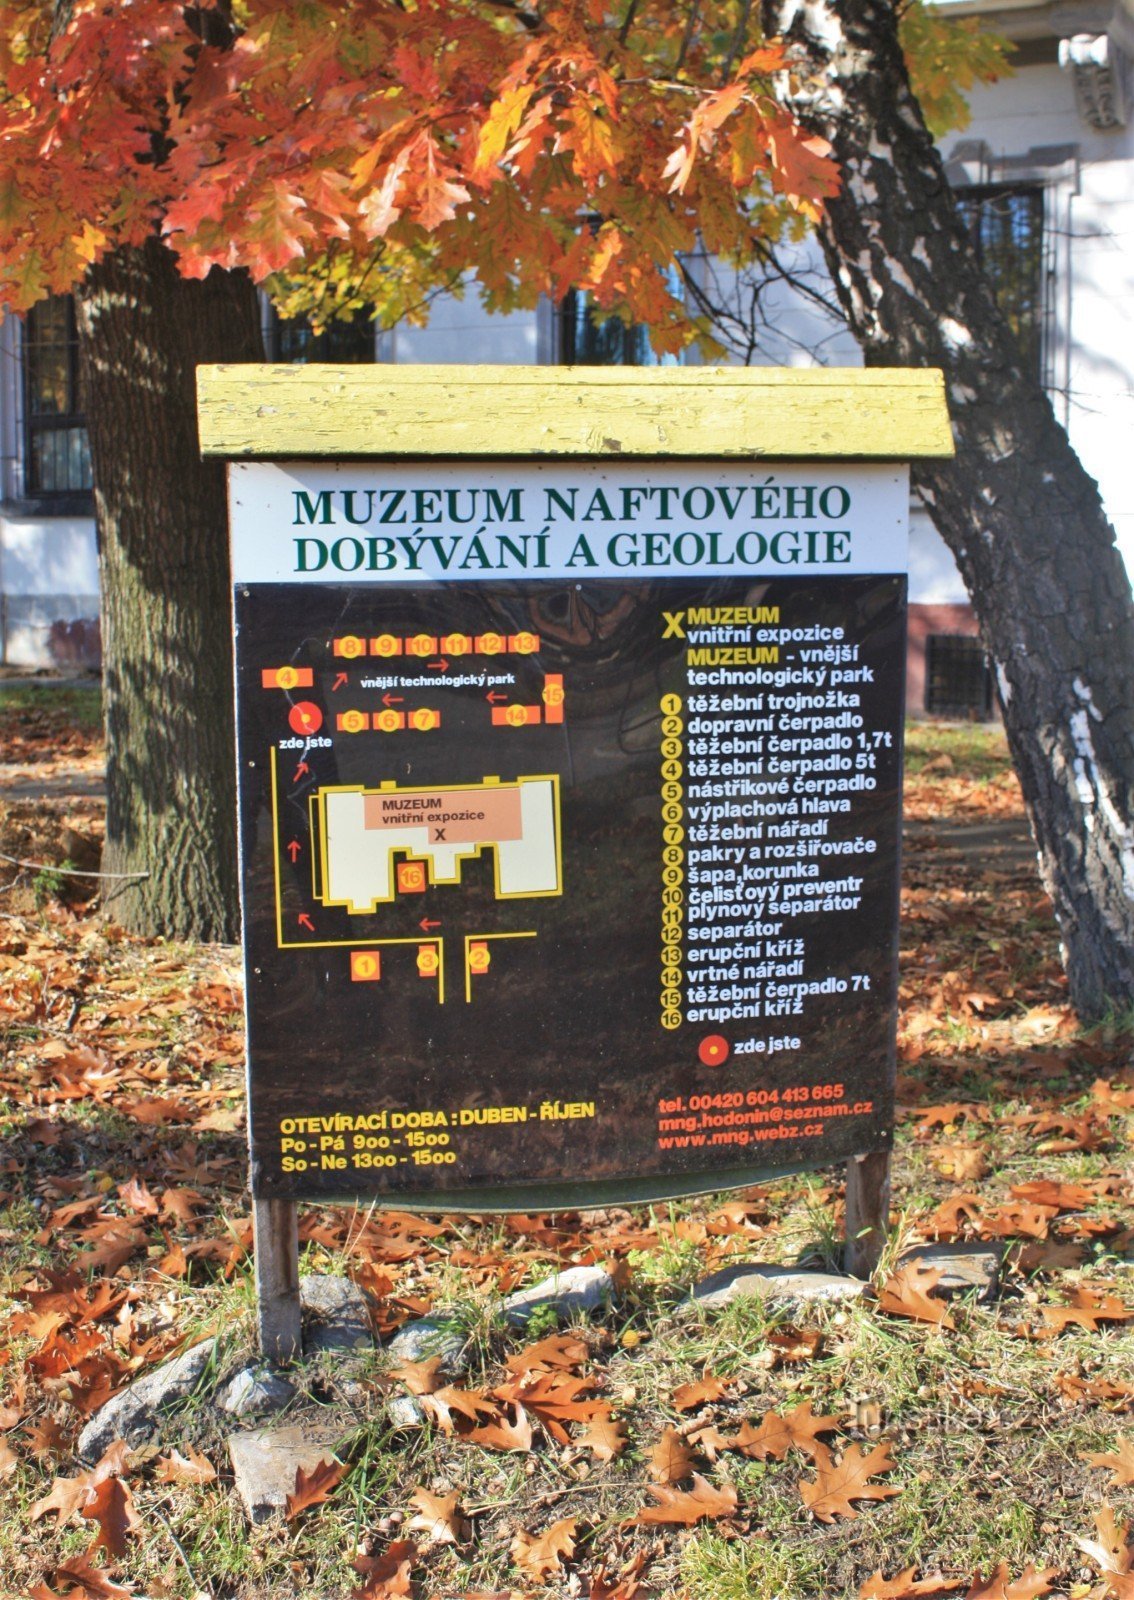 Інформаційне табло перед входом до музею